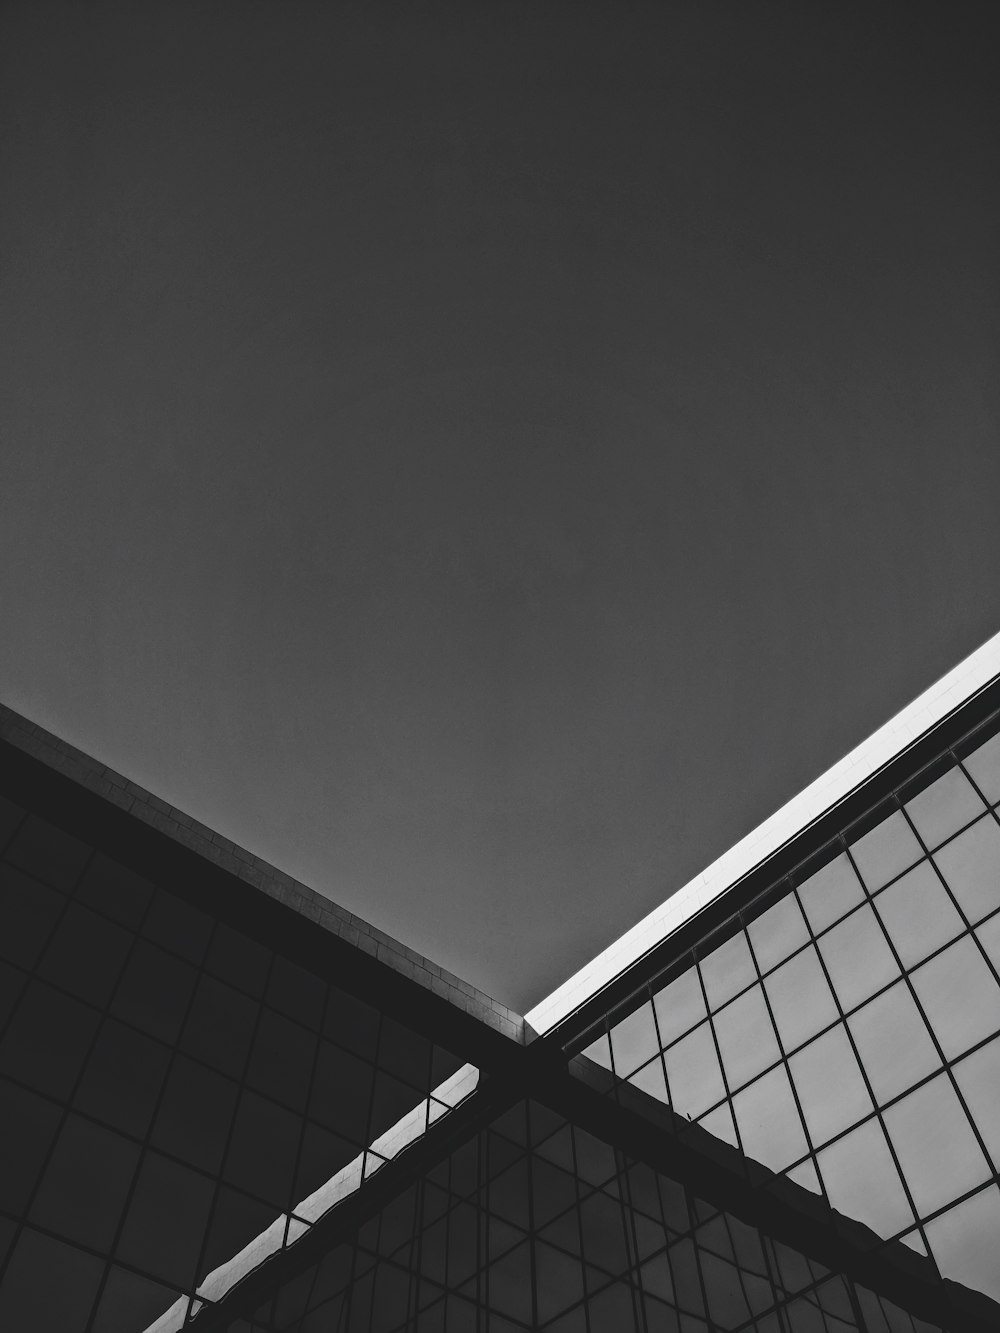 建物の屋根の白黒写真